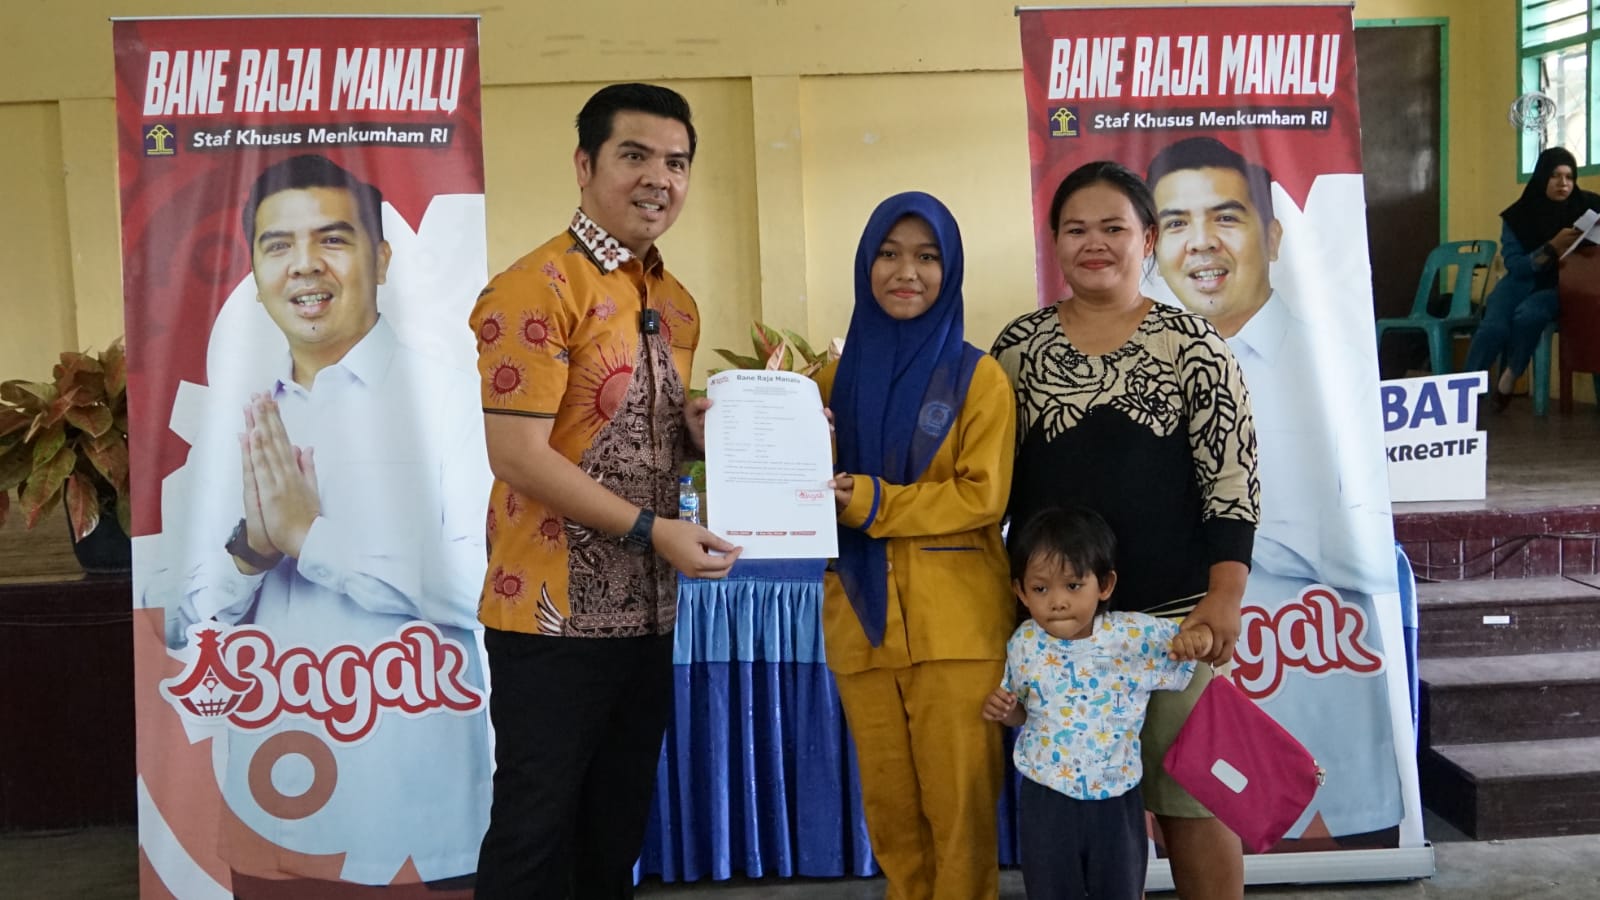 Teks dan Photo : Bane Raja Manalu memberikan Penghargaan Kepada Salah Seorang Siswa